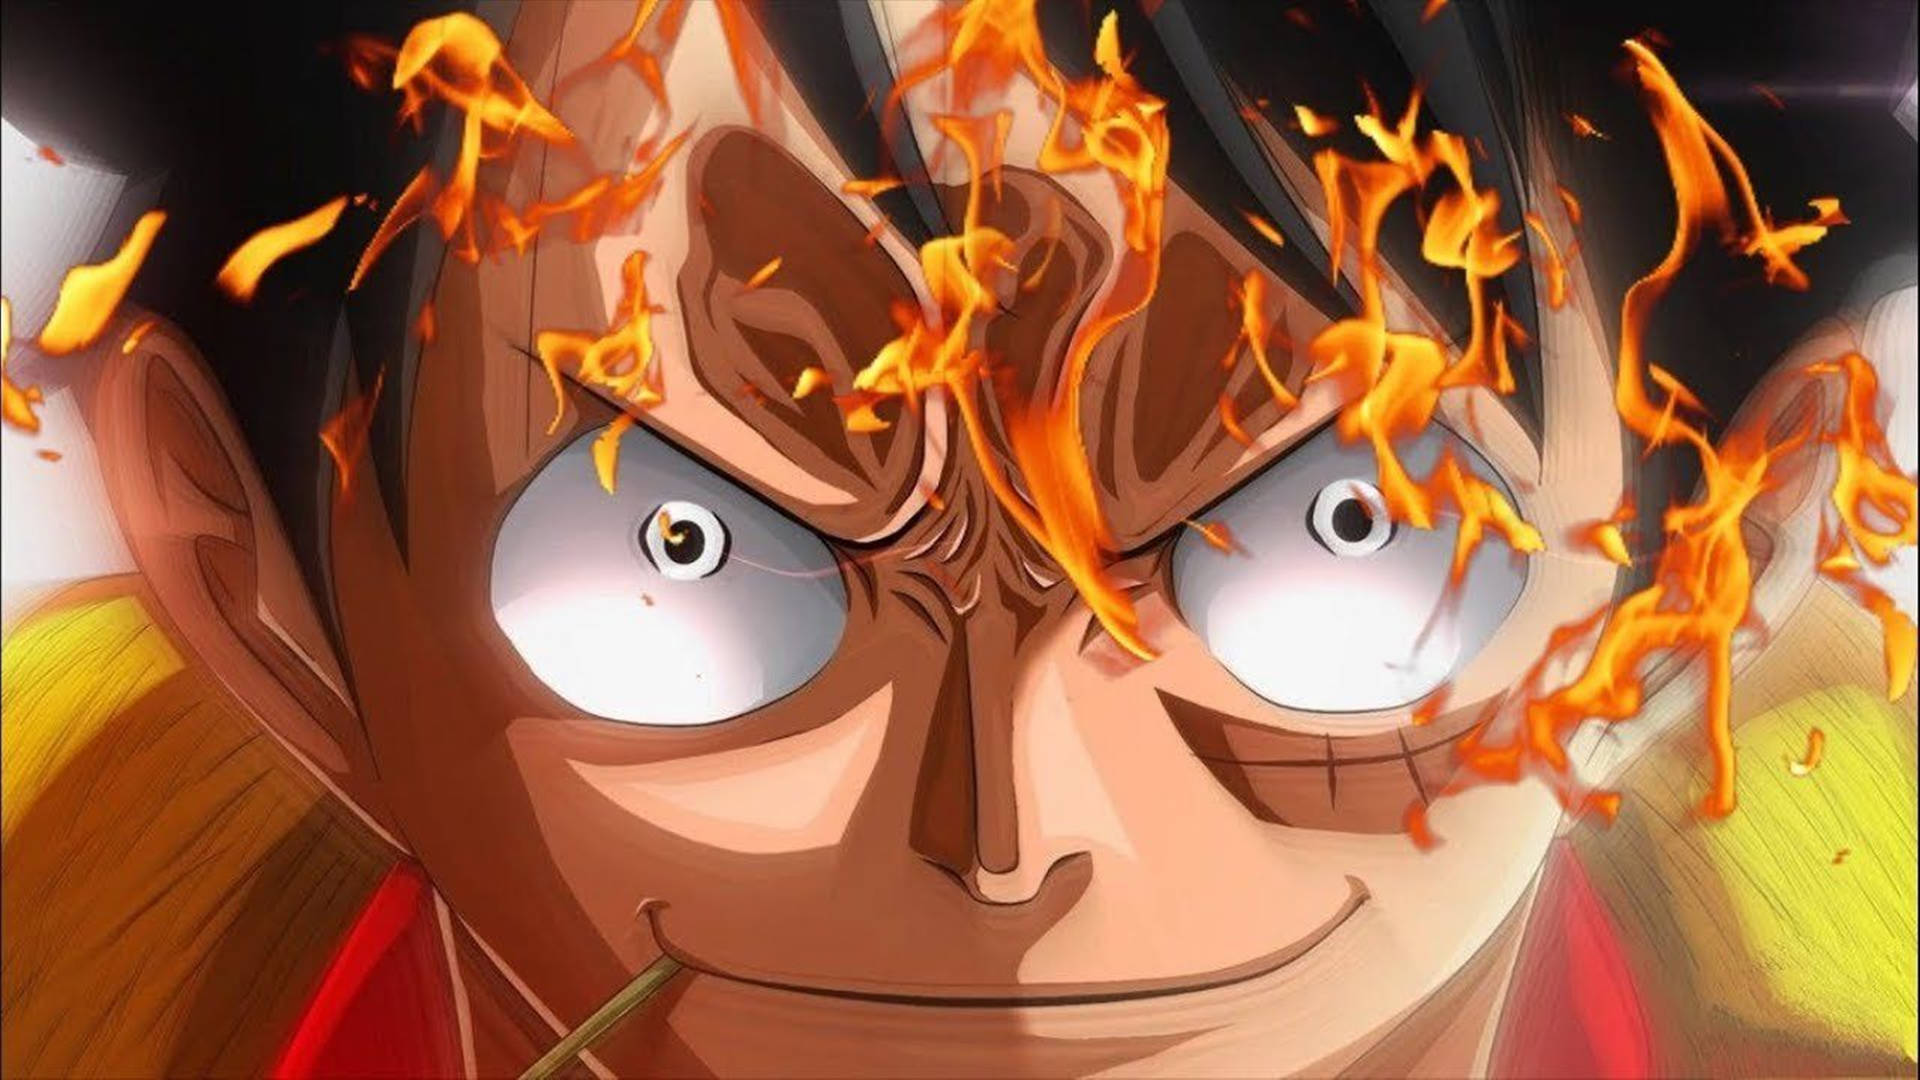 Luffyrosto Em Chamas One Piece Wano 4k. Papel de Parede